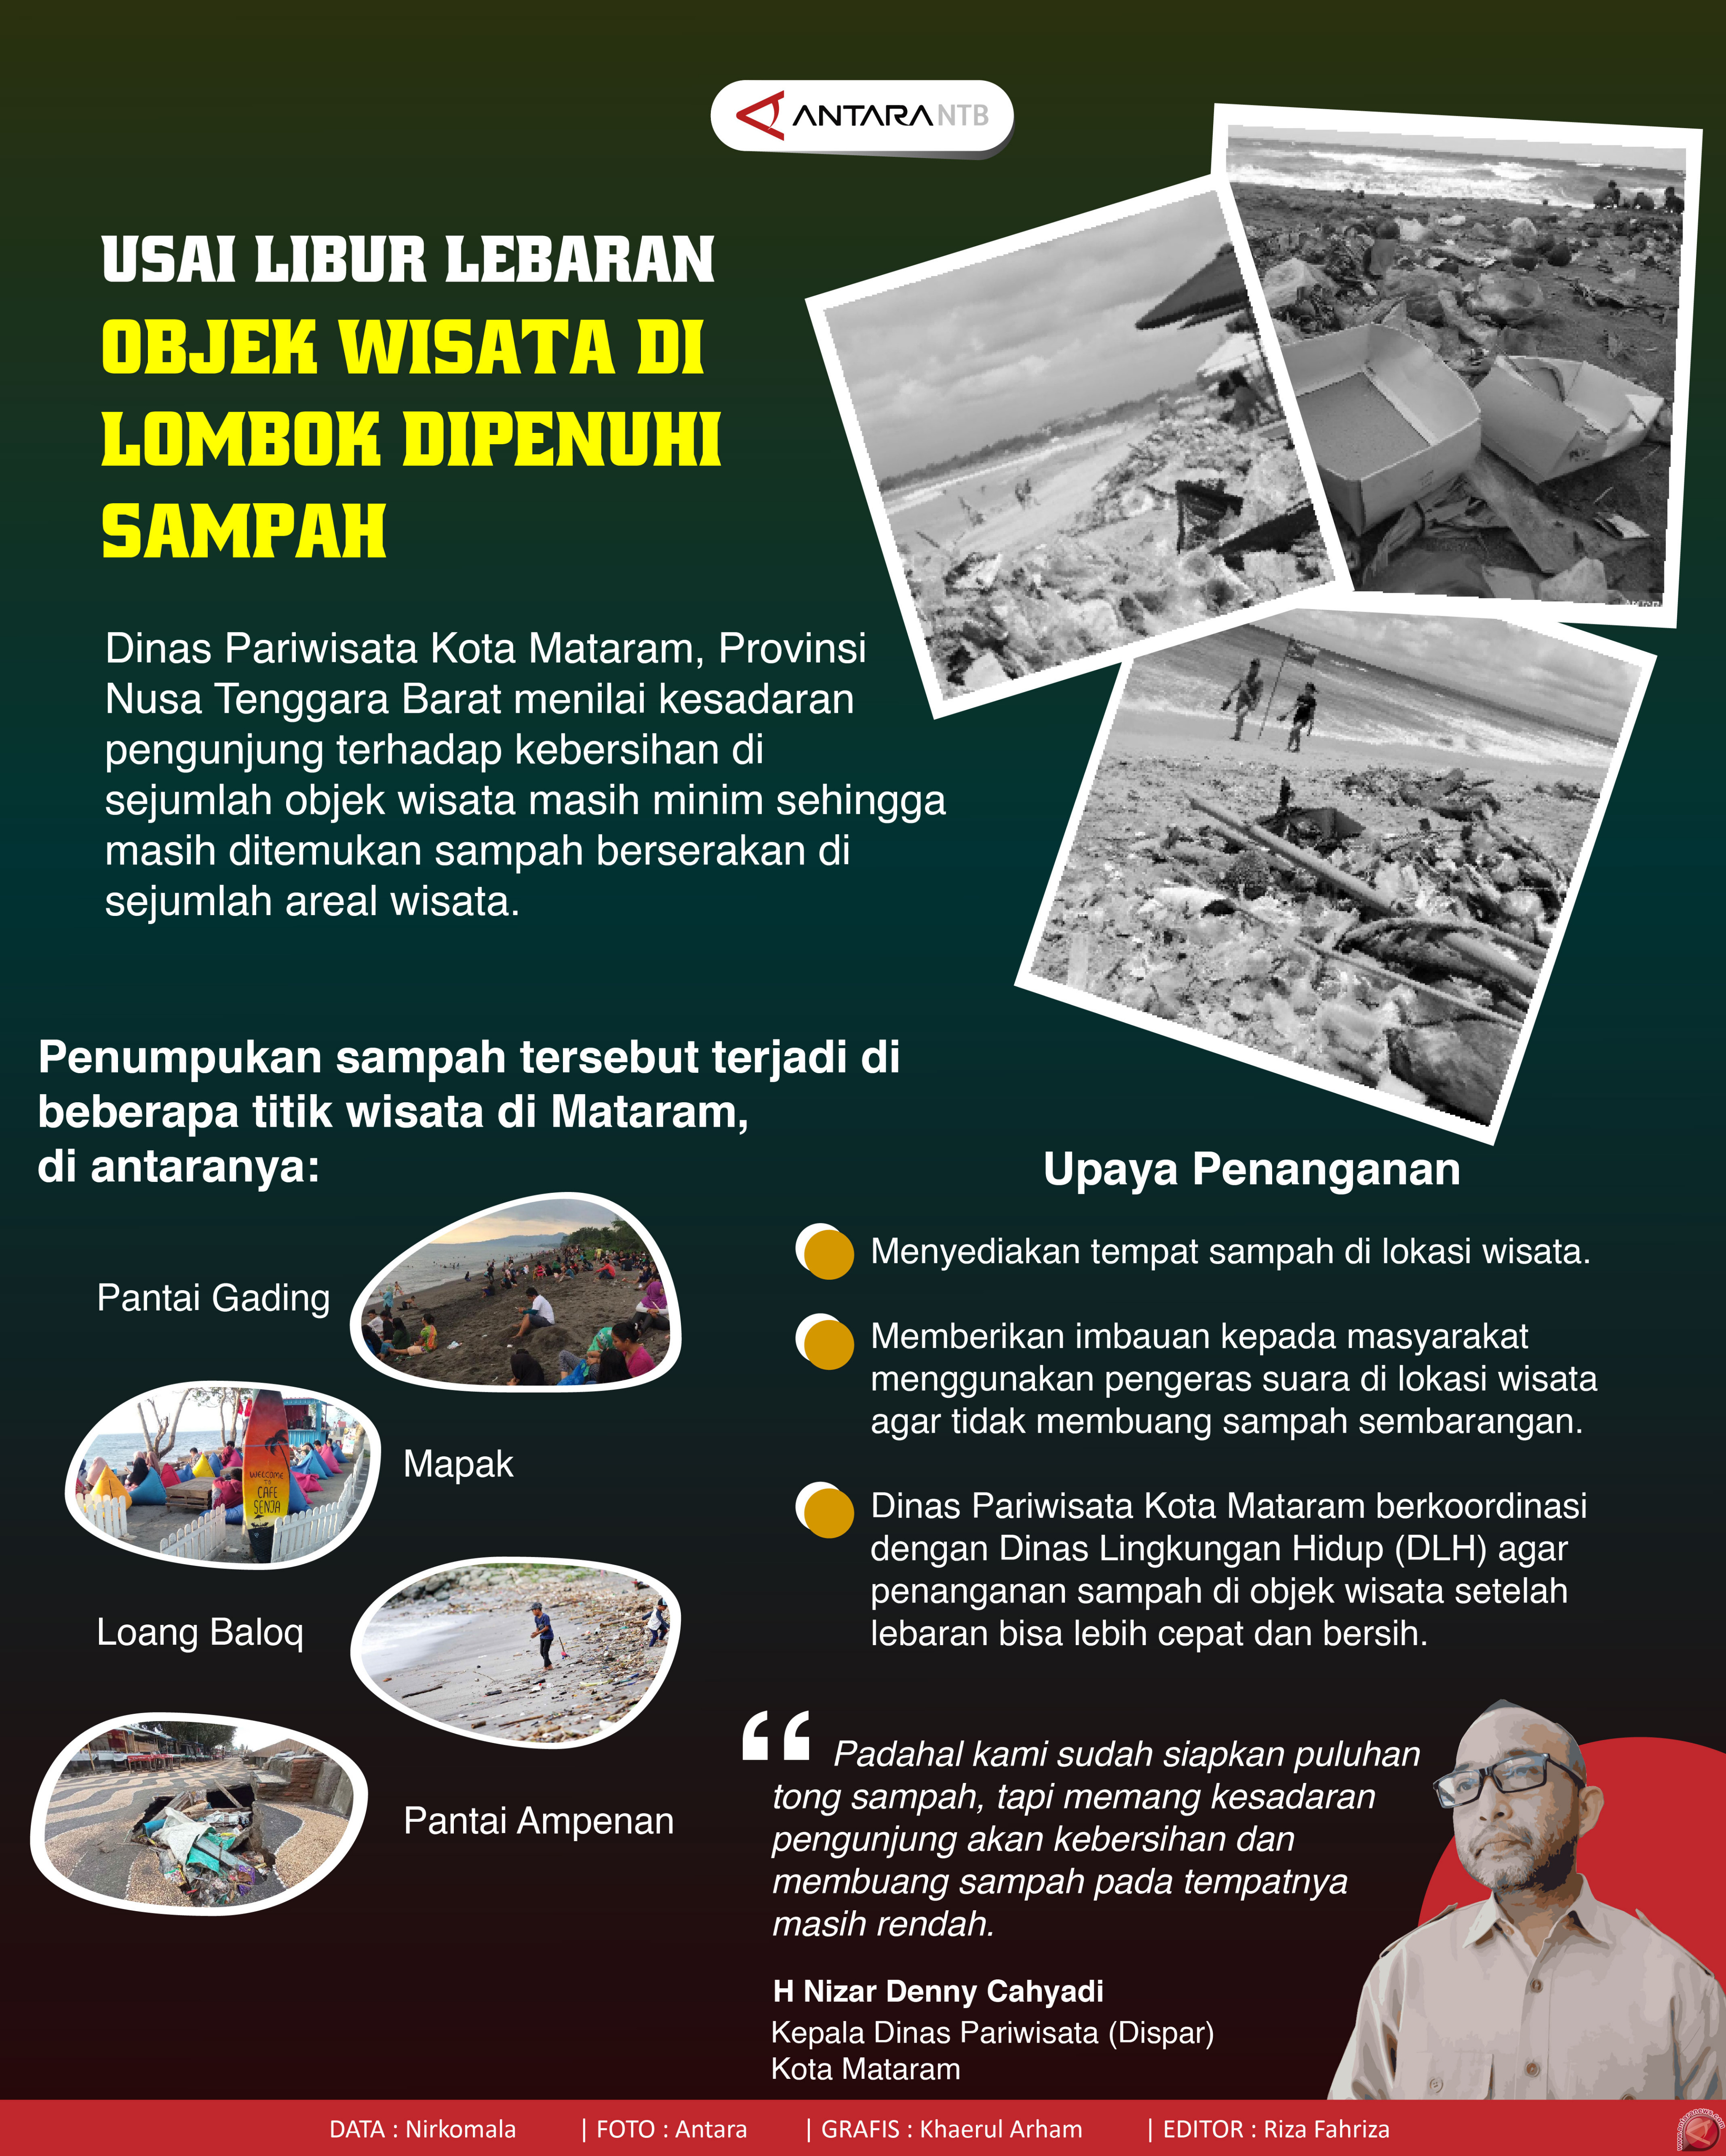 Usai libur Lebaran objek wisata di Lombok dipenuhi sampah